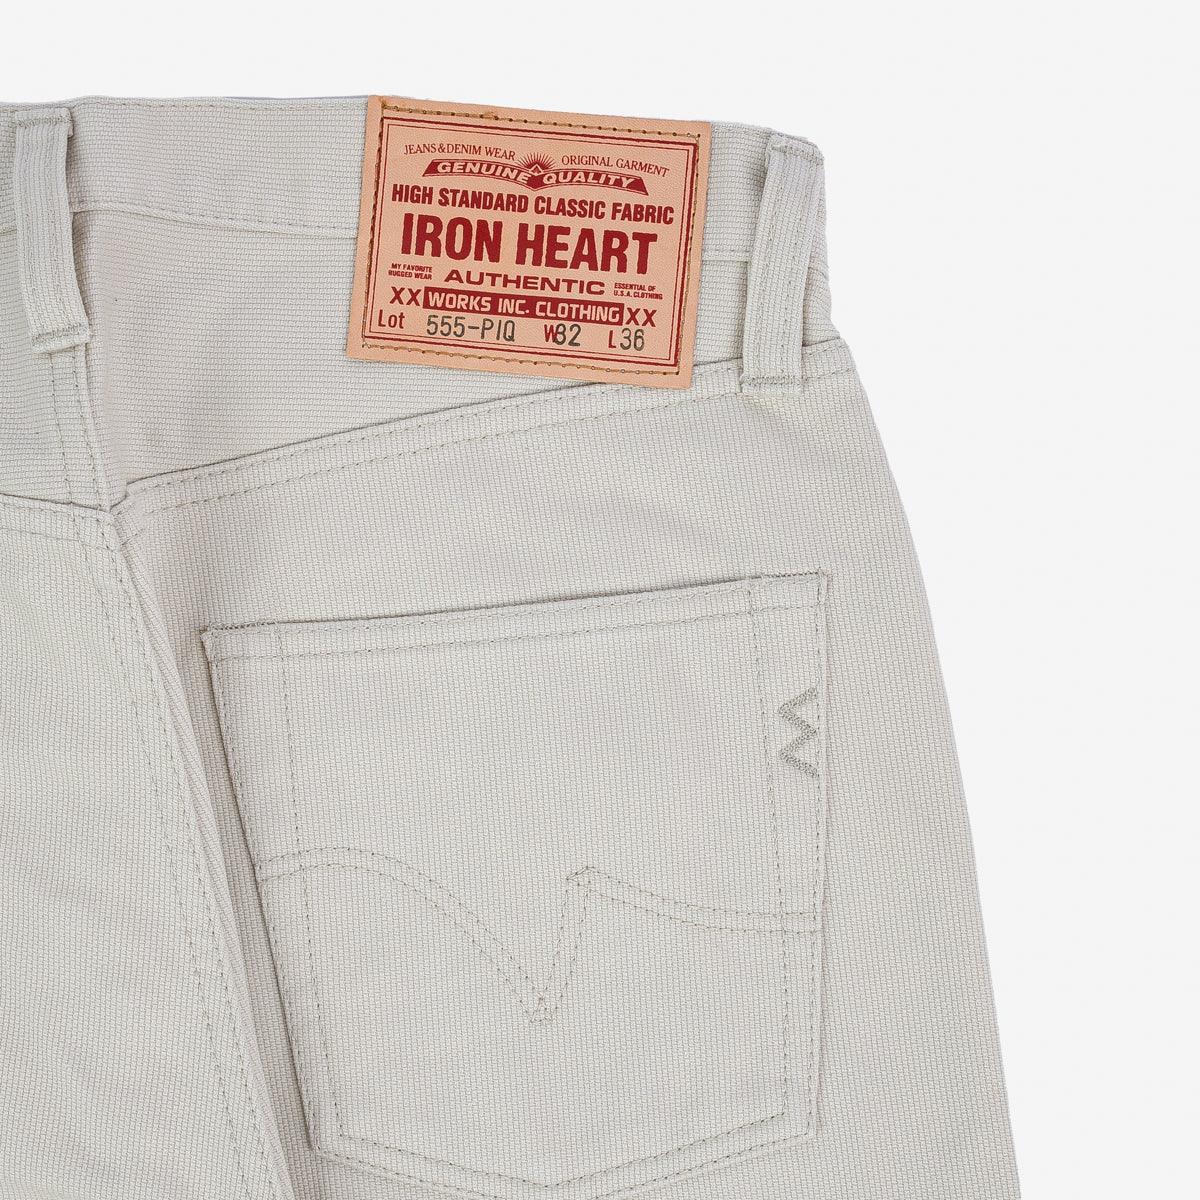 IH-555-PIQ - 14oz Cotton Piqué Super Slim Cut Jeans - Ecru